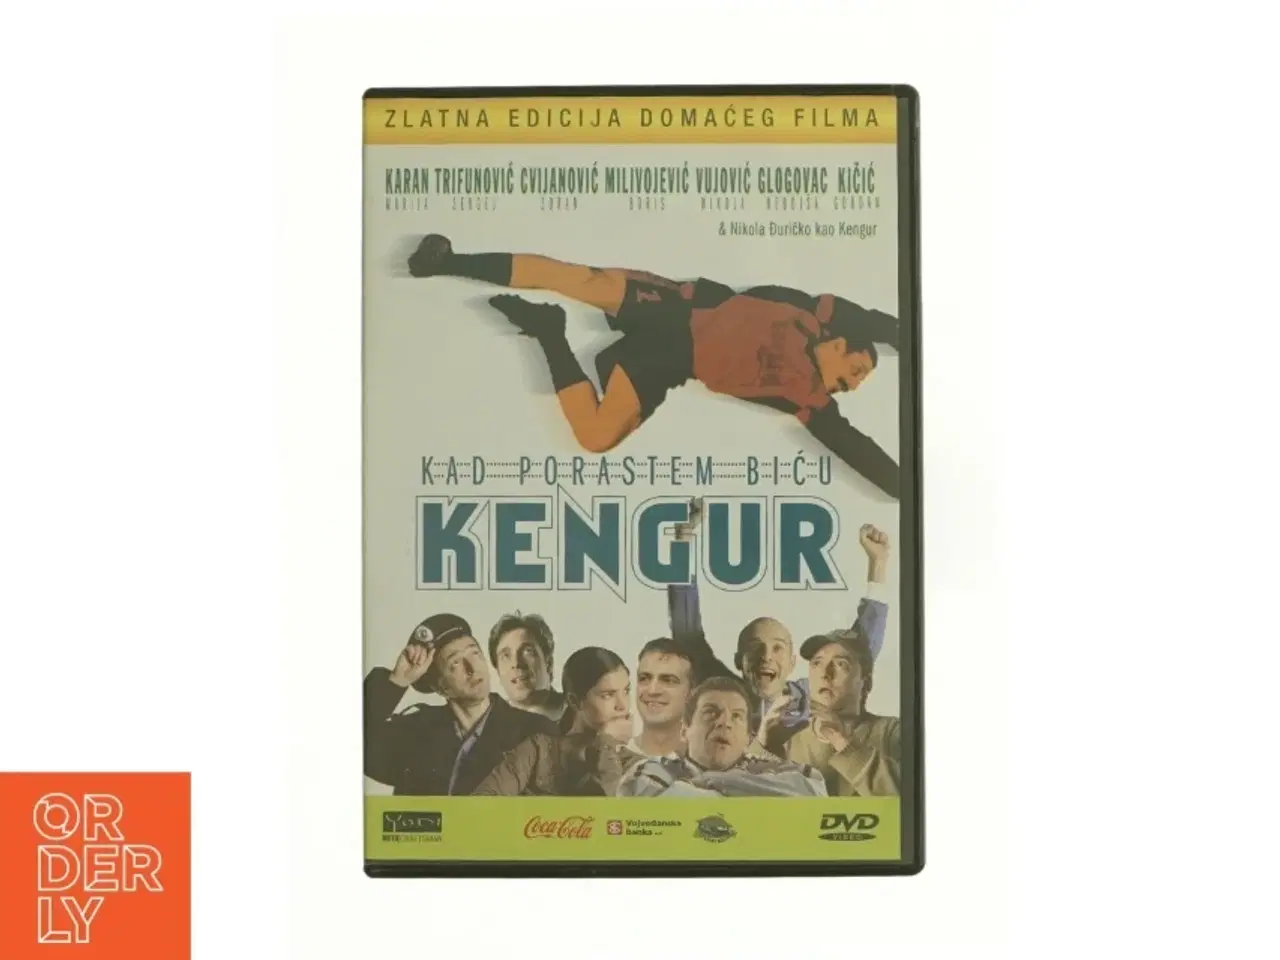 Billede 1 - Kengur  fra dvd